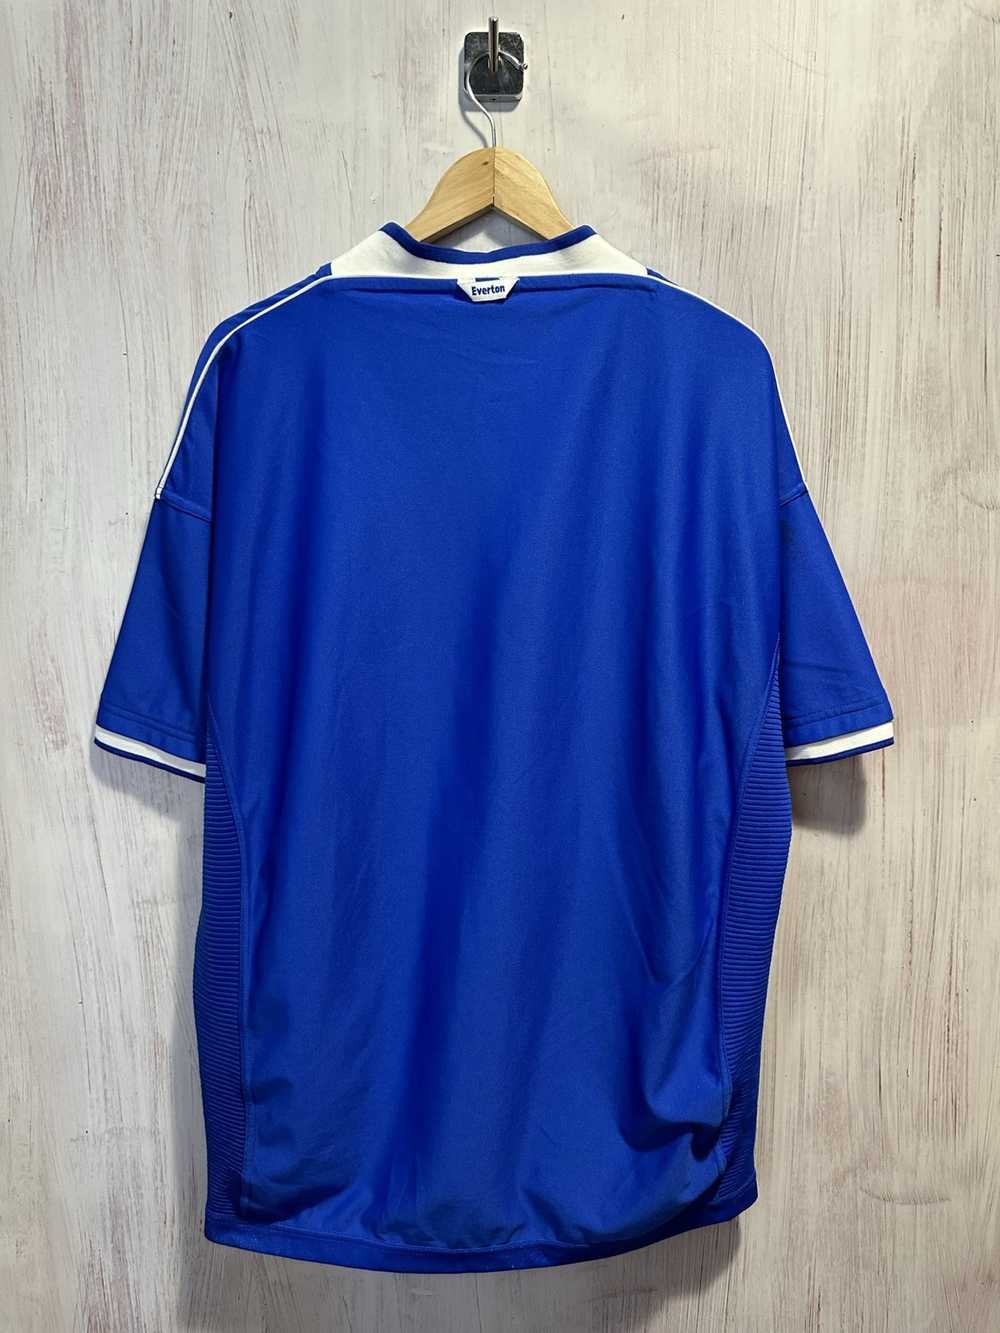 Soccer Jersey × Umbro × Vintage FC Everton 1999 2… - image 2